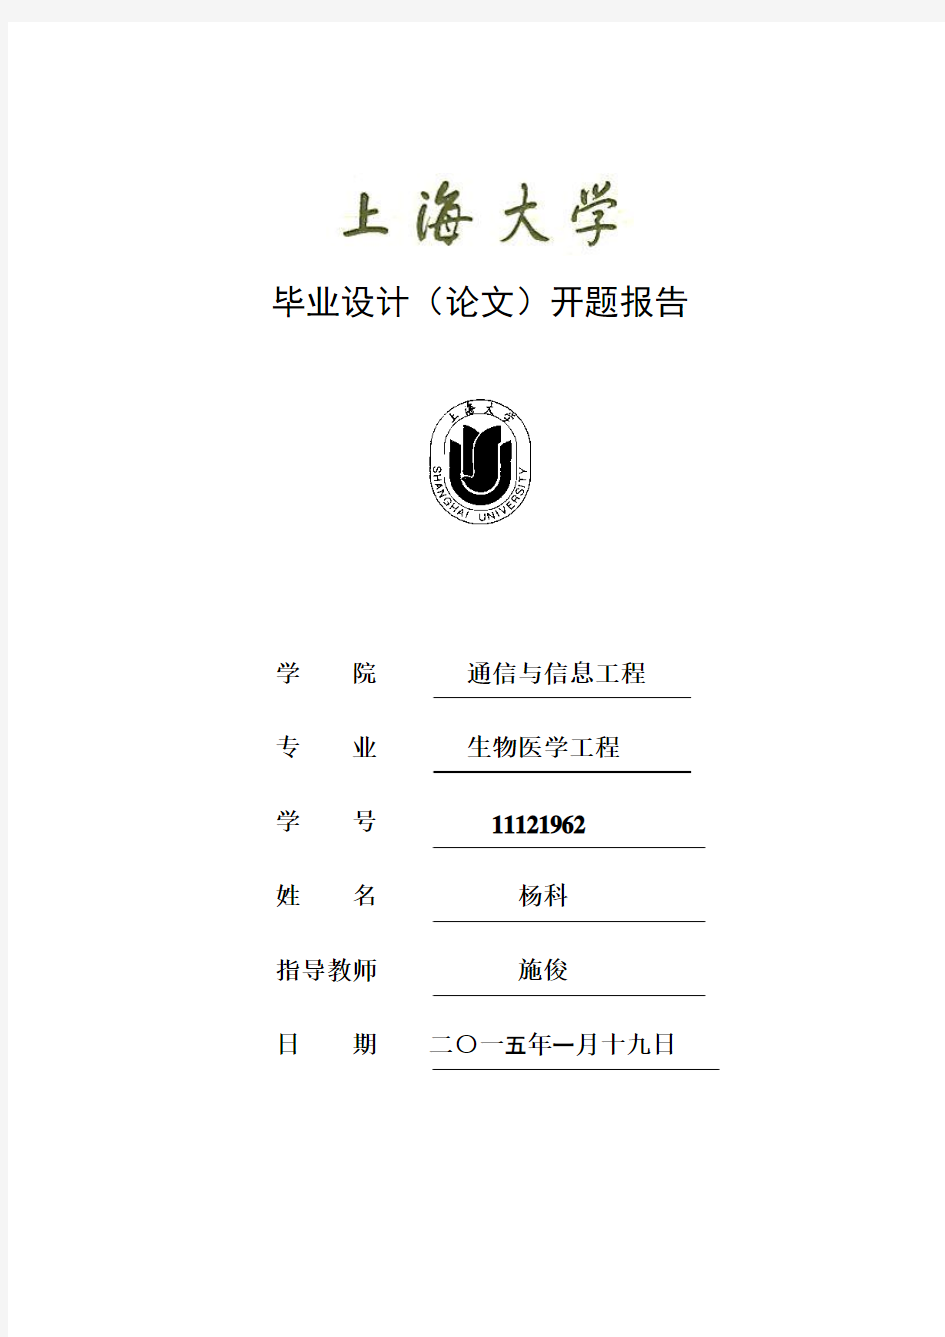 上海大学毕业设计(论文)开题22报告-杨科 (13)